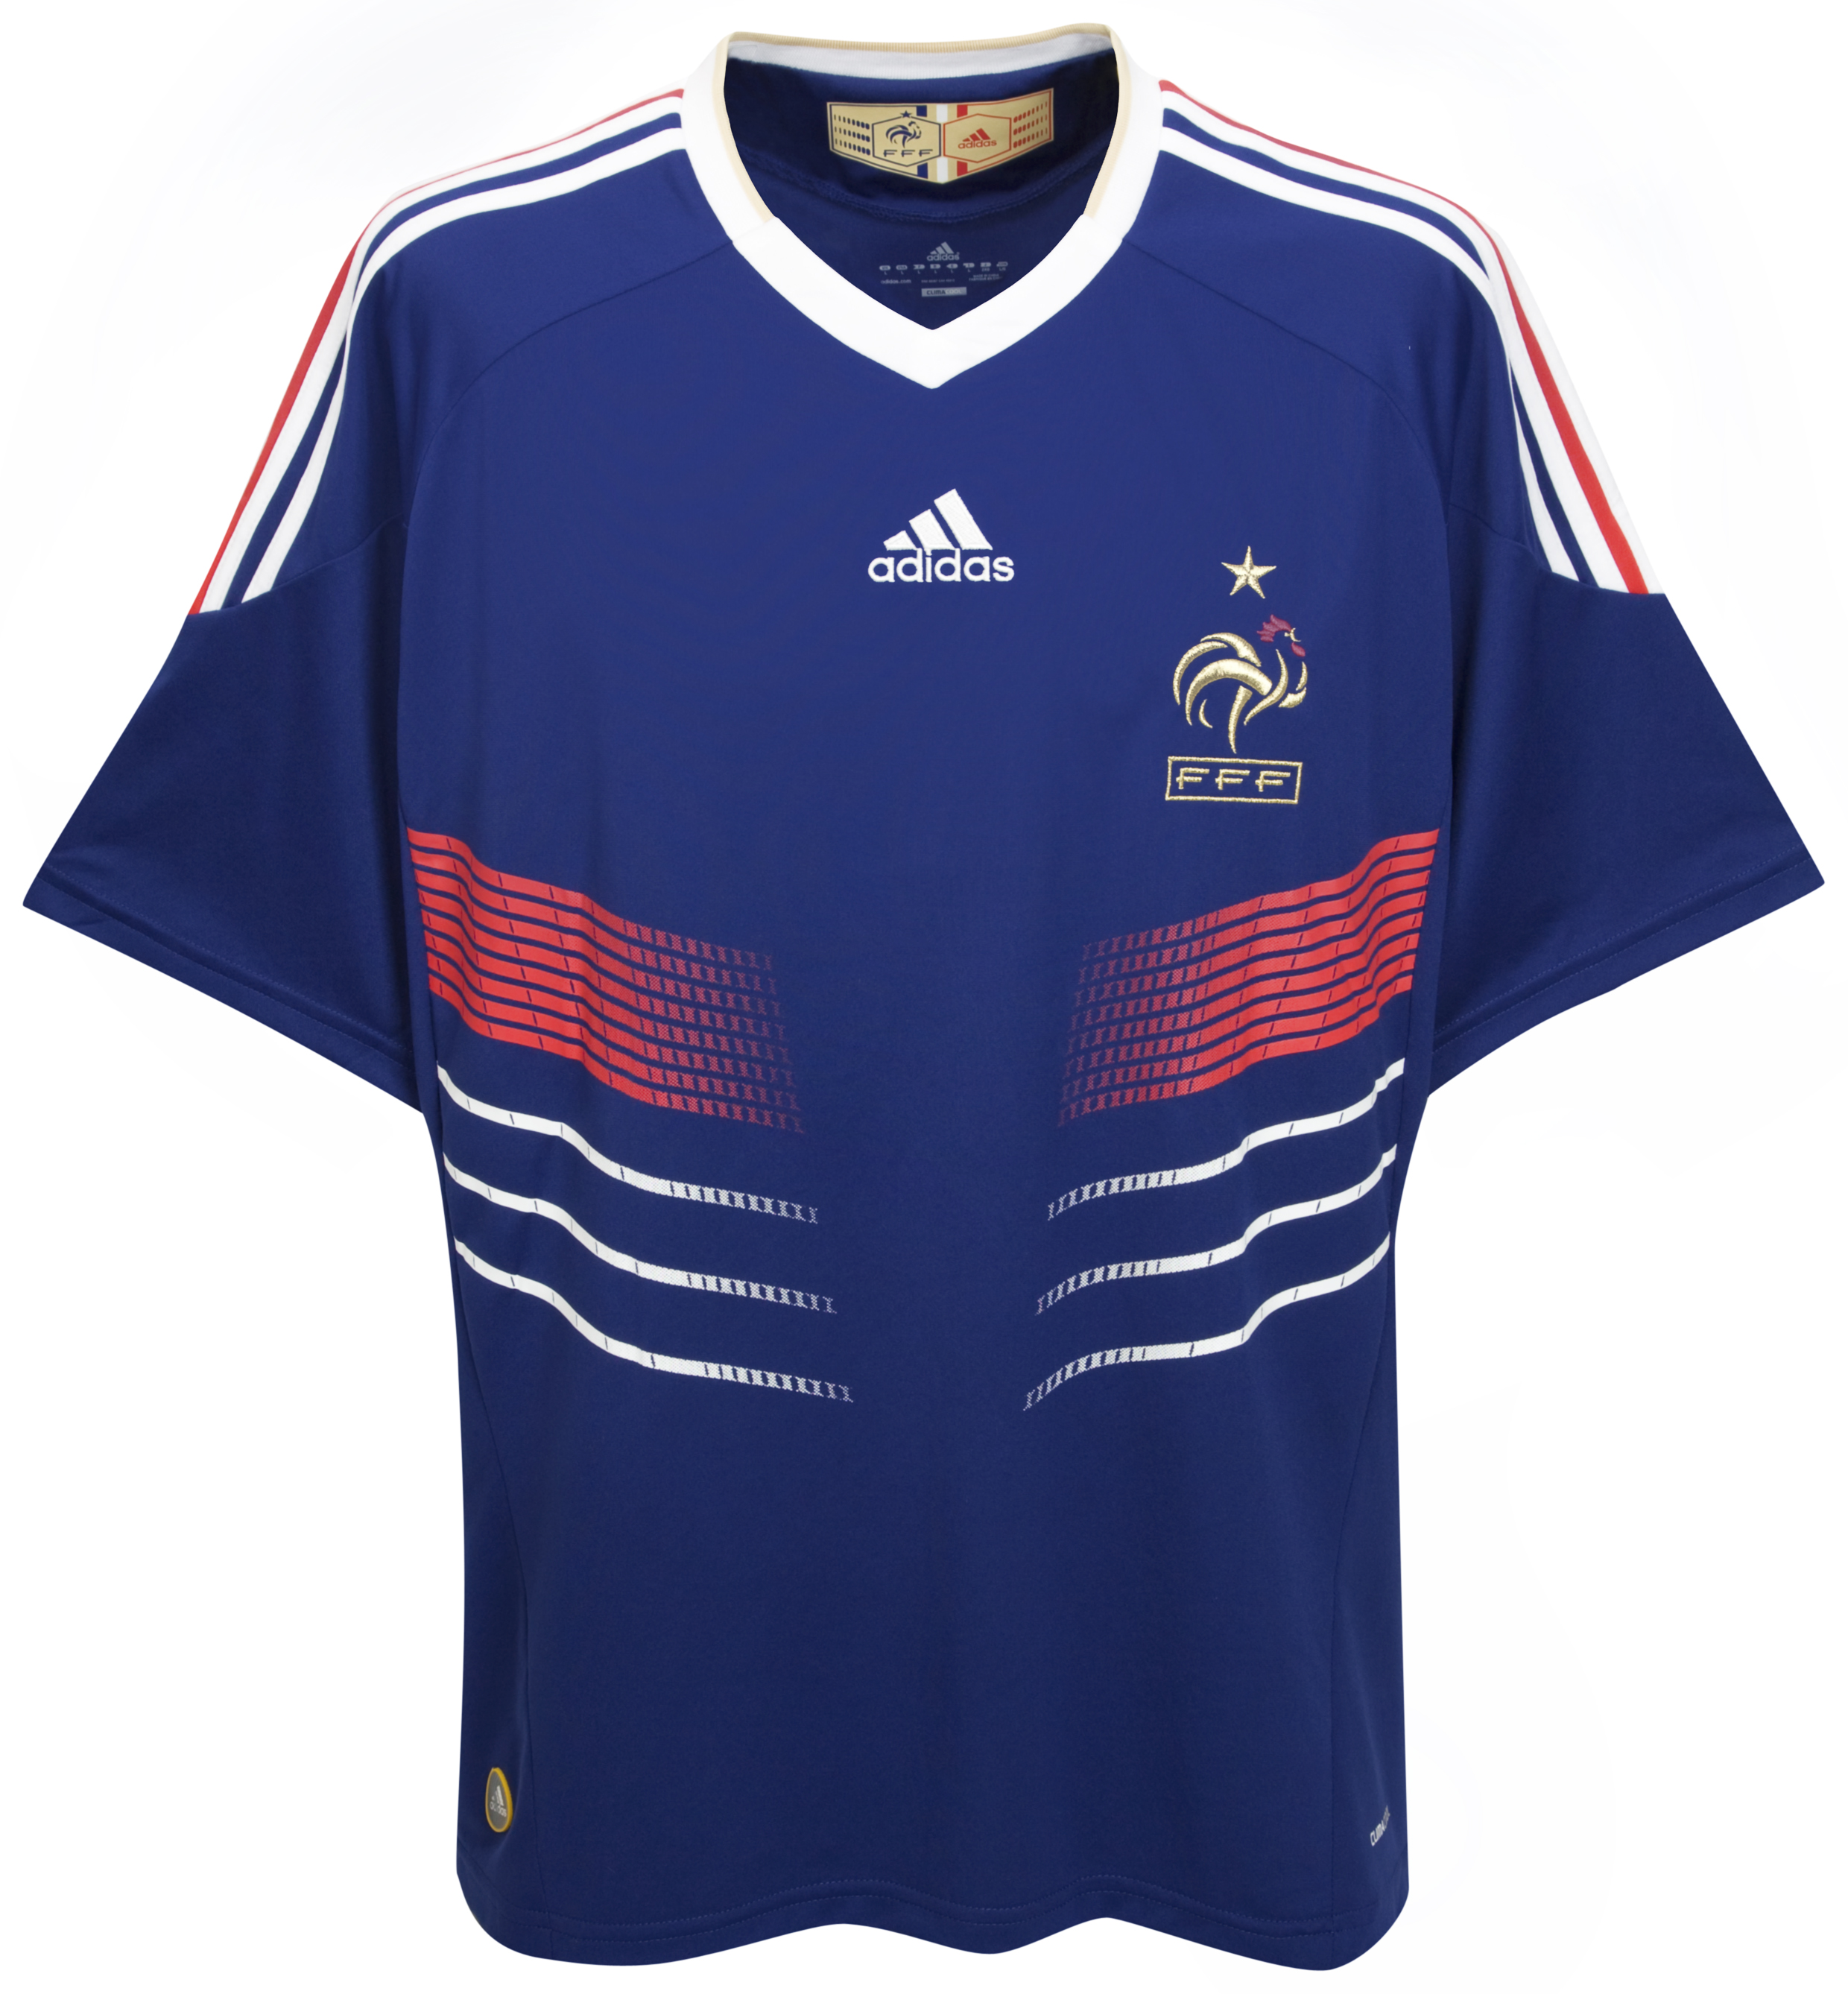 ملابس المنتخبات لكأس العالم 2010 Cfc-63740